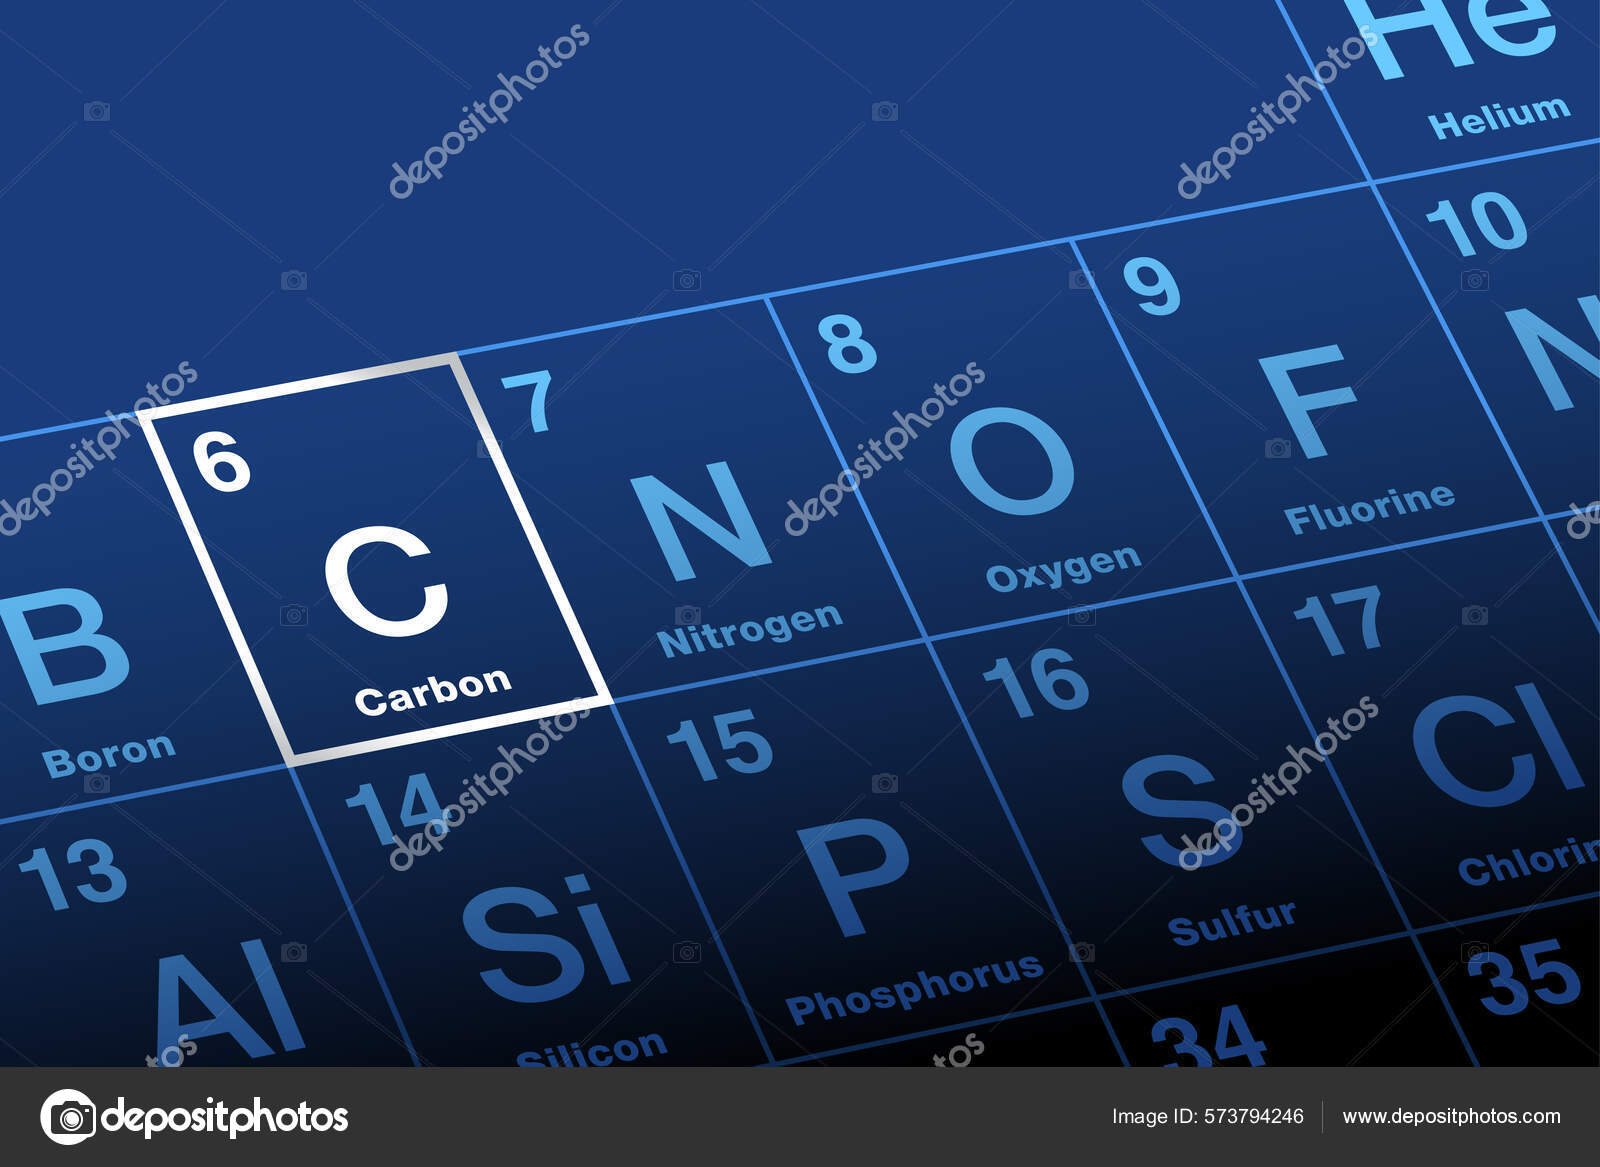 元素周期表上的碳含C符号的非金属化学元素来自拉丁文Carbo代表煤原子